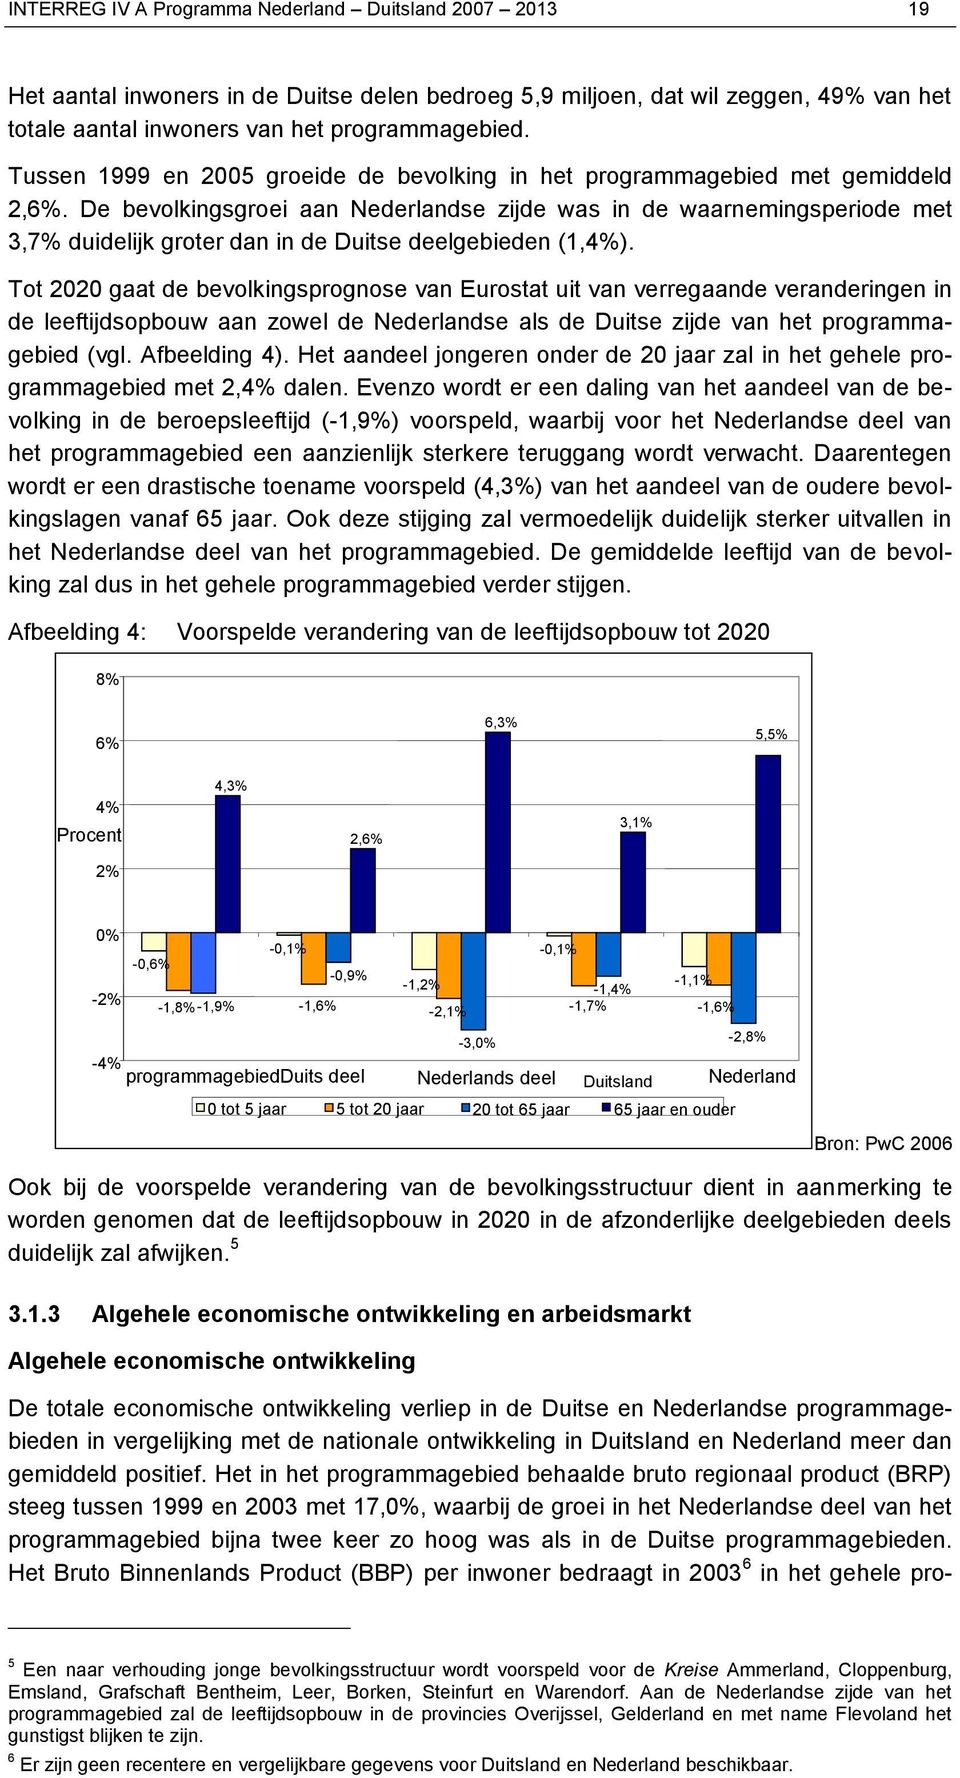 De bevolkingsgroei aan Nederlandse zijde was in de waarnemingsperiode met 3,7% duidelijk groter dan in de Duitse deelgebieden (1,4%).